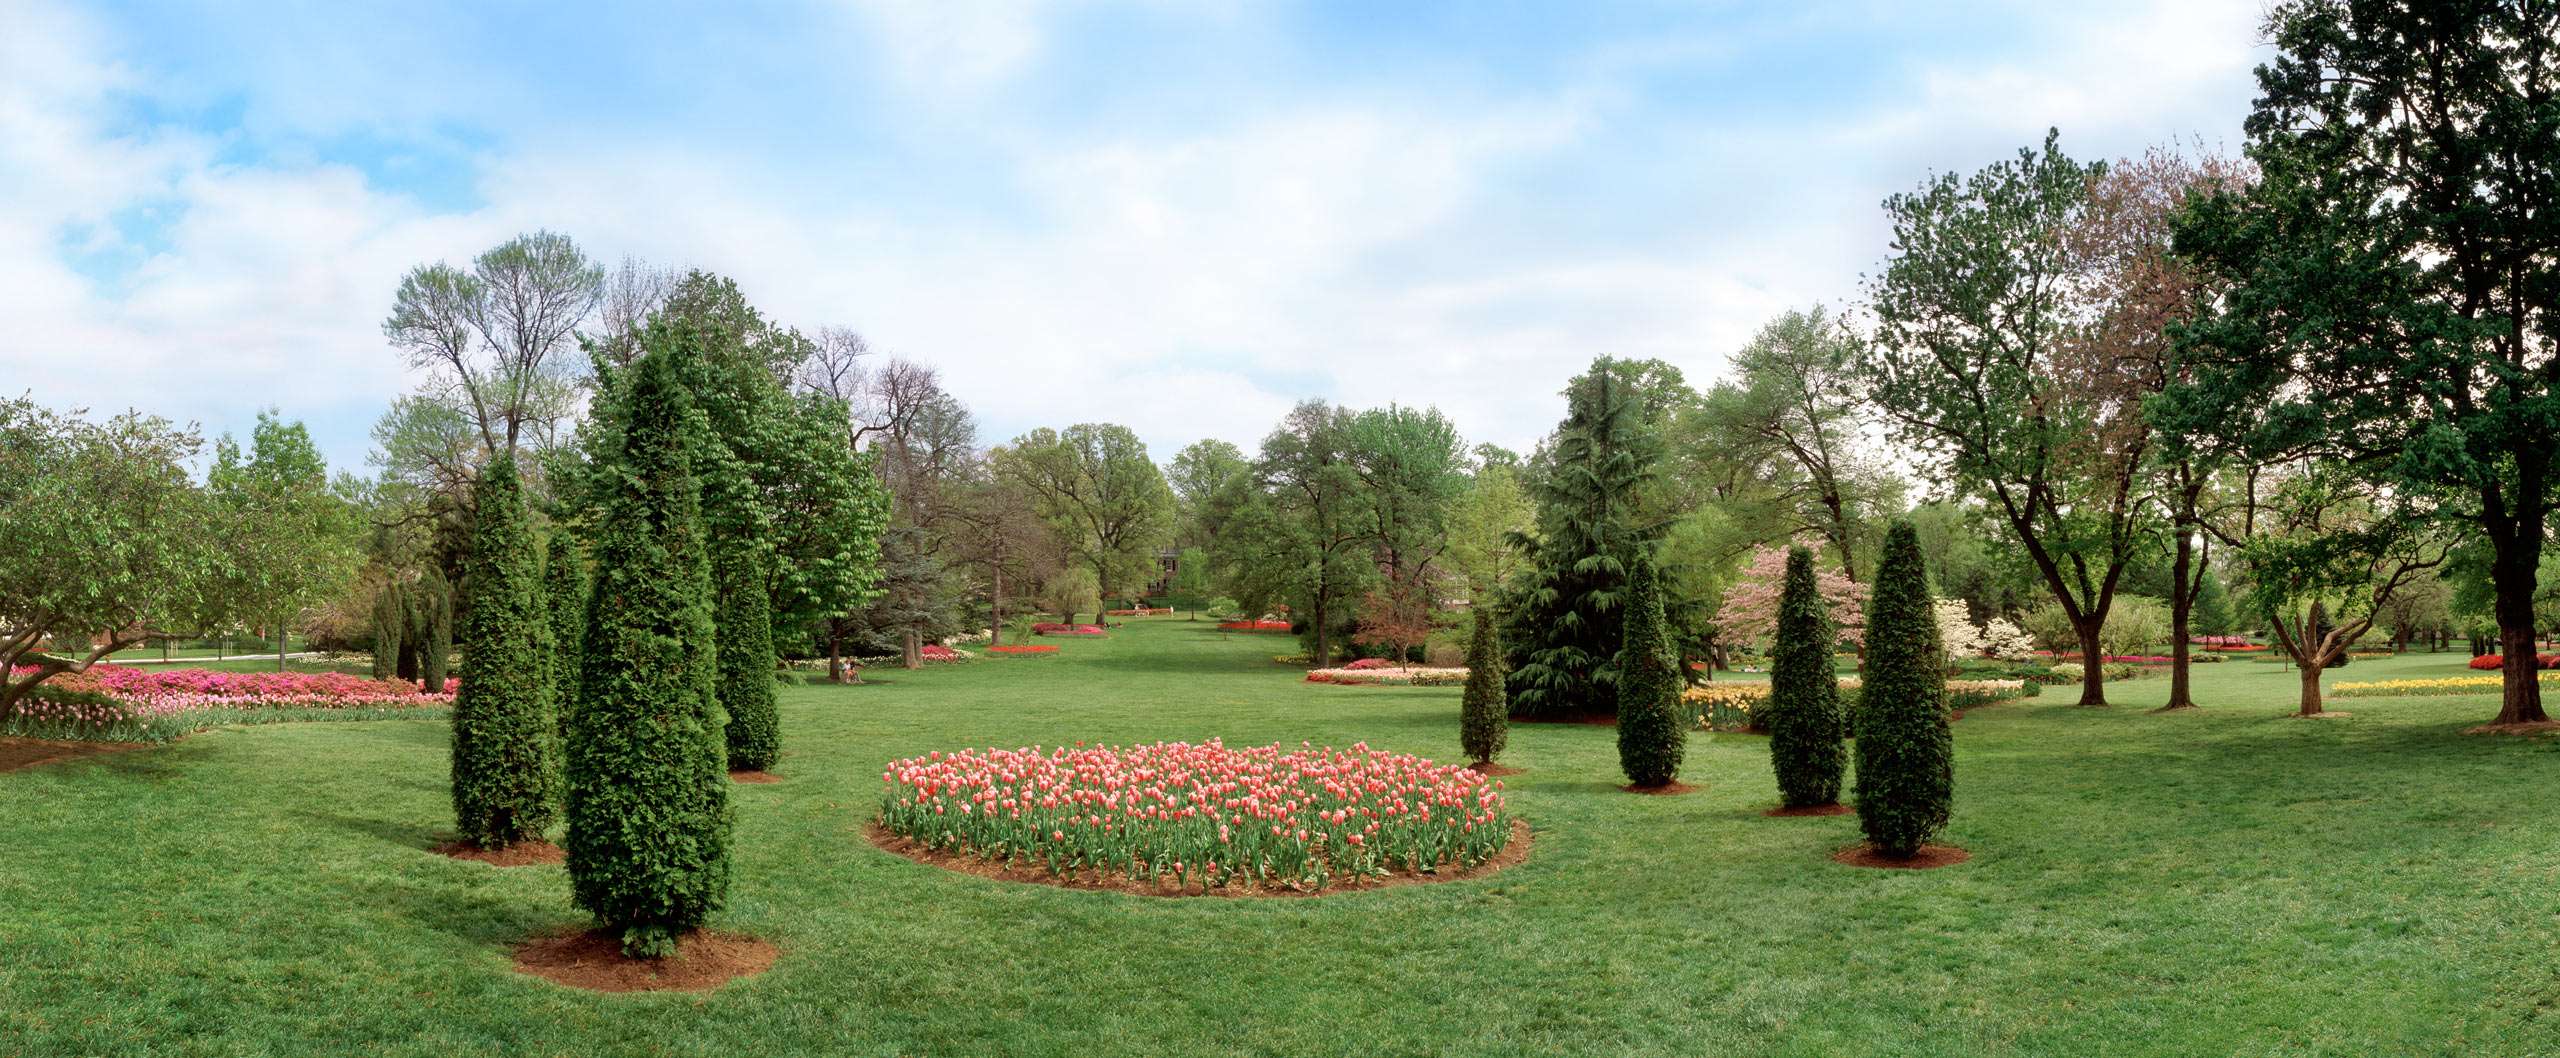 PORTFOLIO - Baltimore - Neighborhoods      #30  Formal Garden with Tulip Beds